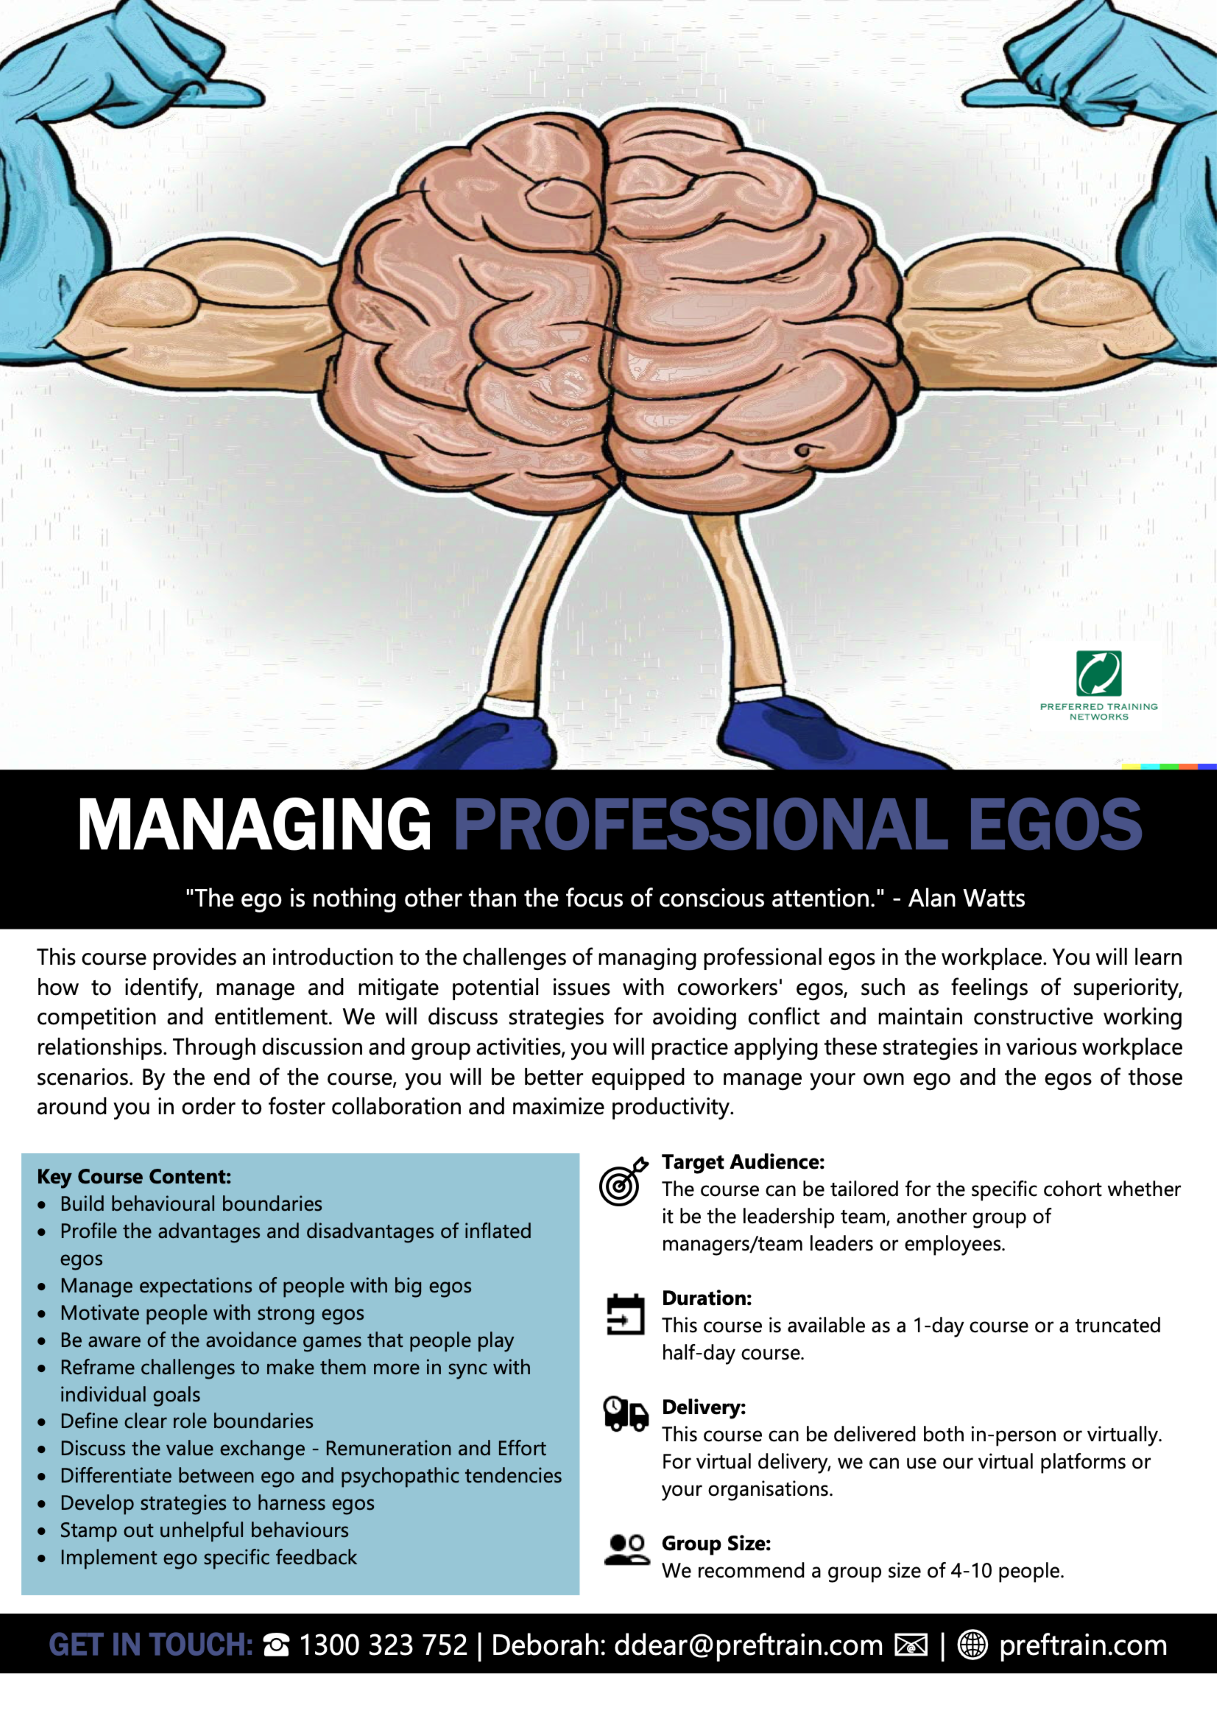 Managing Professional Egos